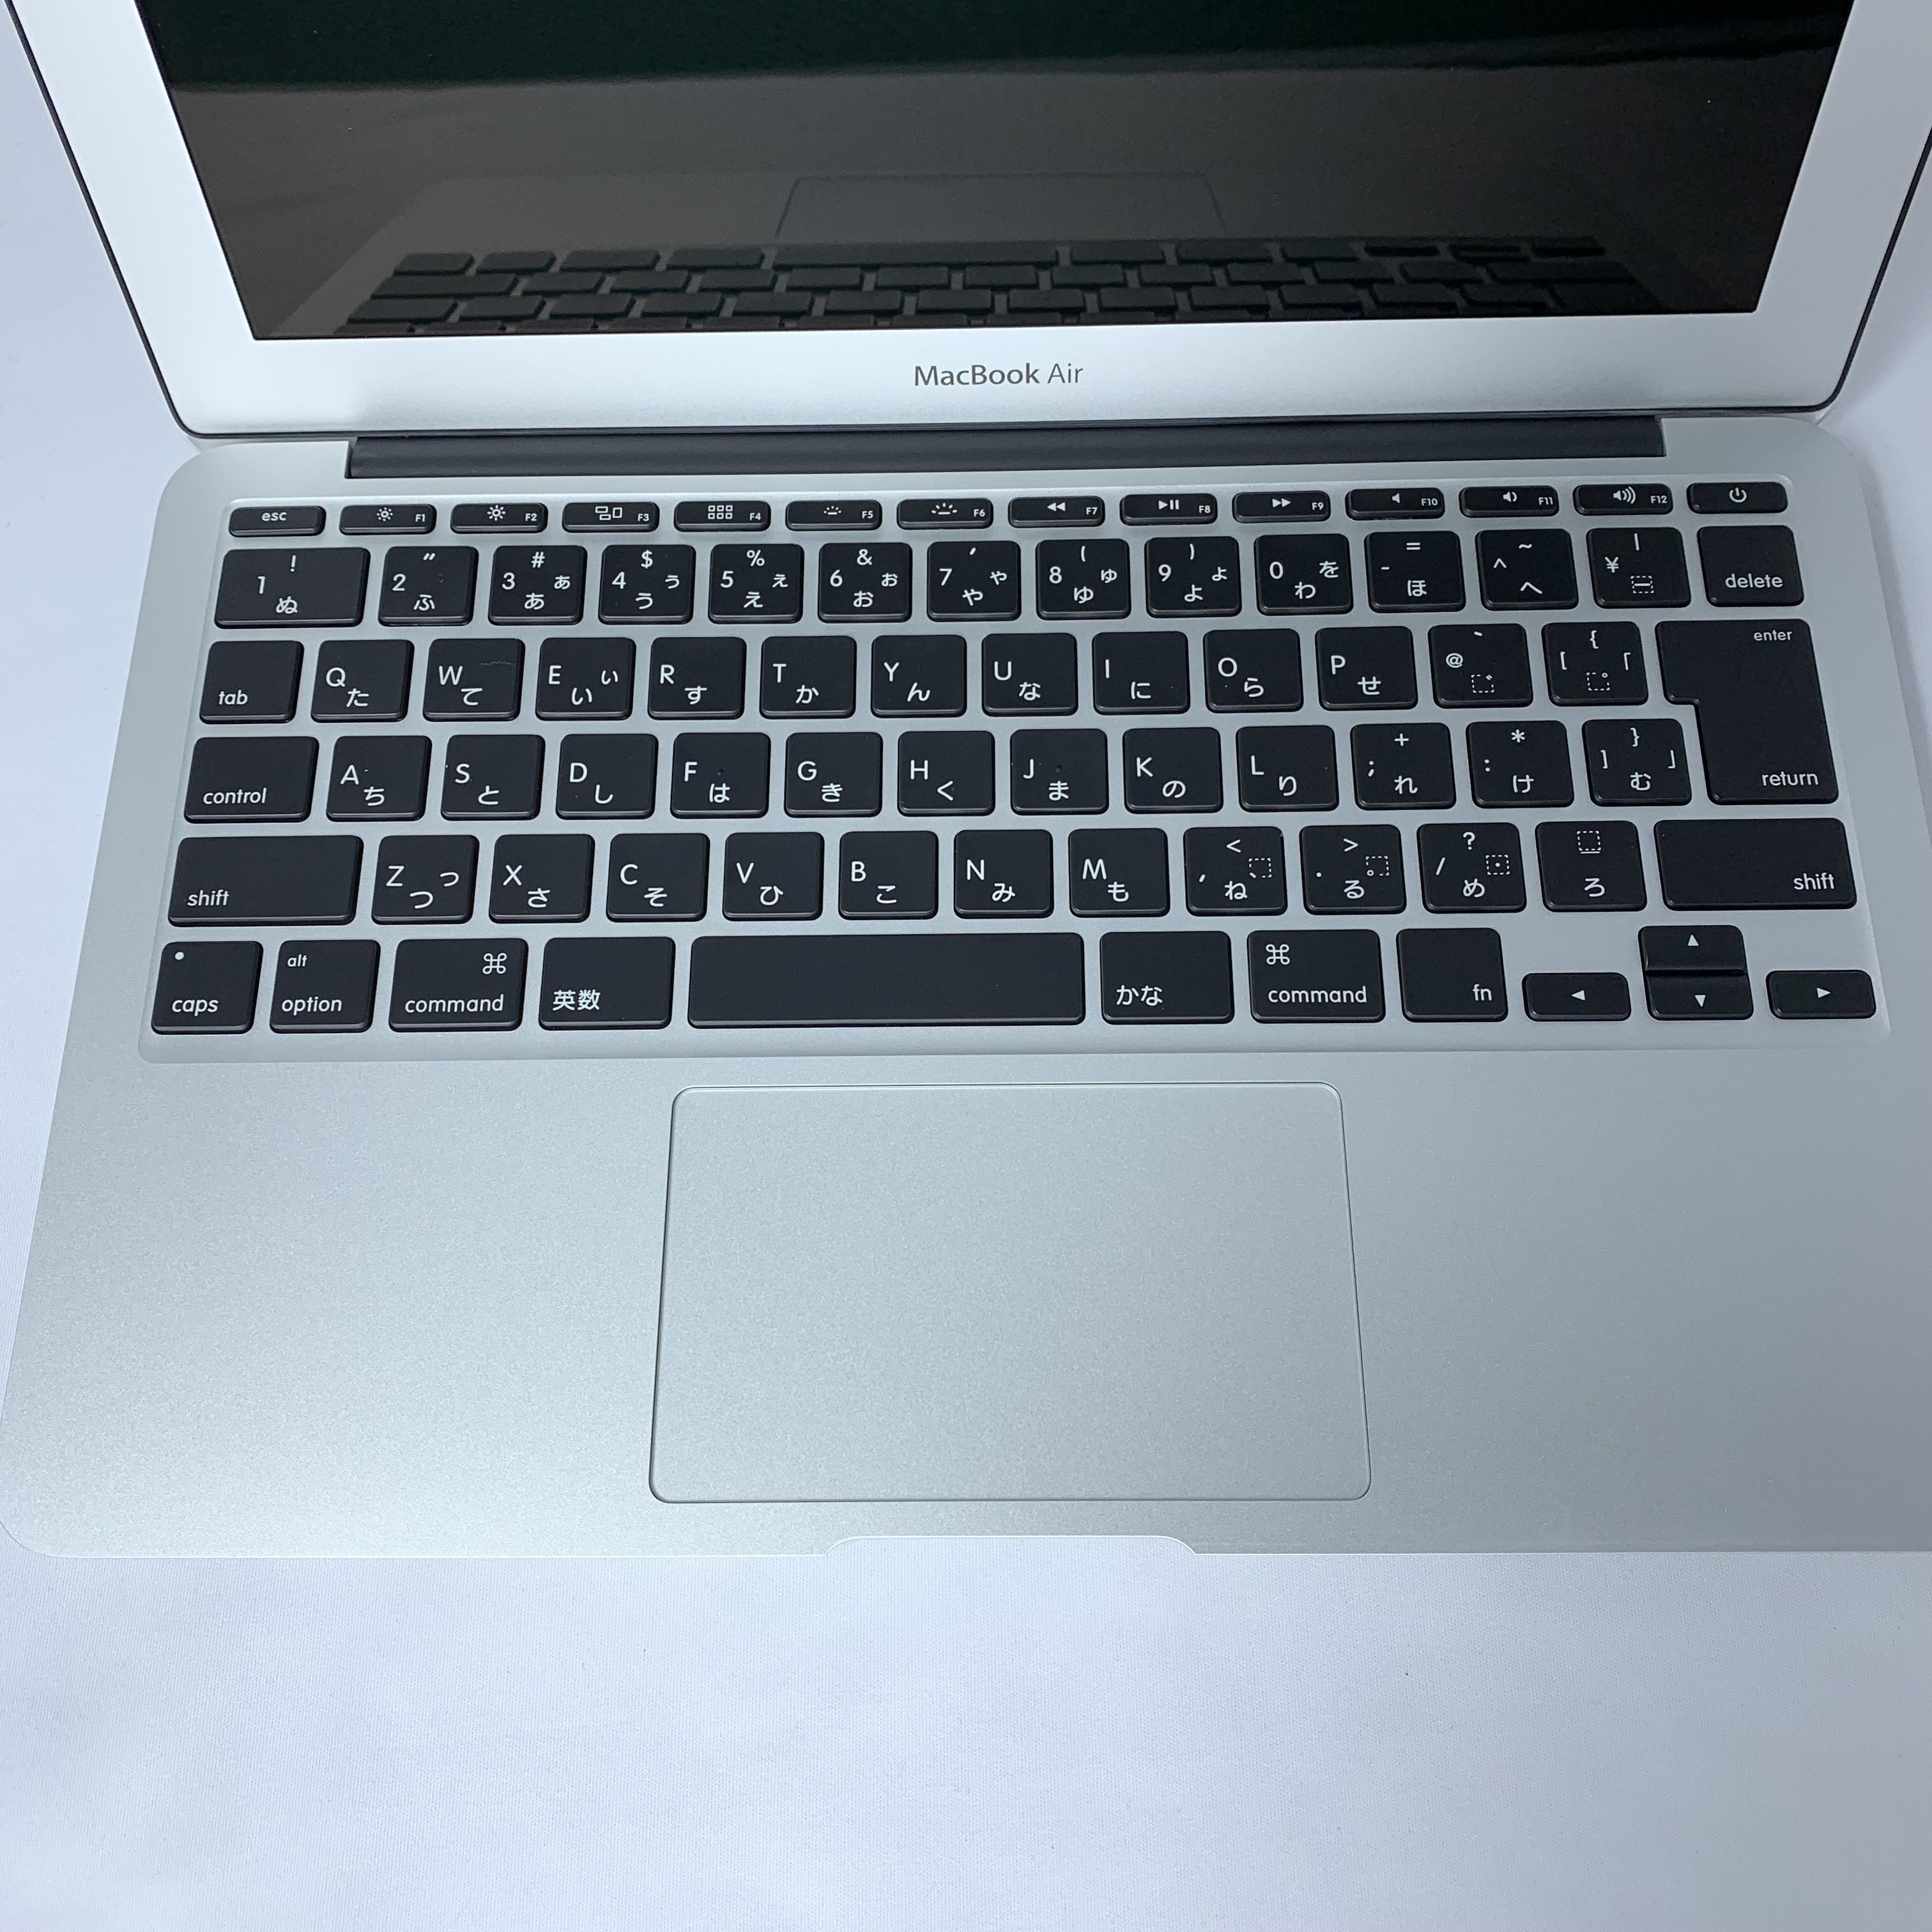 【中古】Apple MacBook Air MJVM2J/A 1600/11.6 Early 2015【★安心中古お試し保証付き】